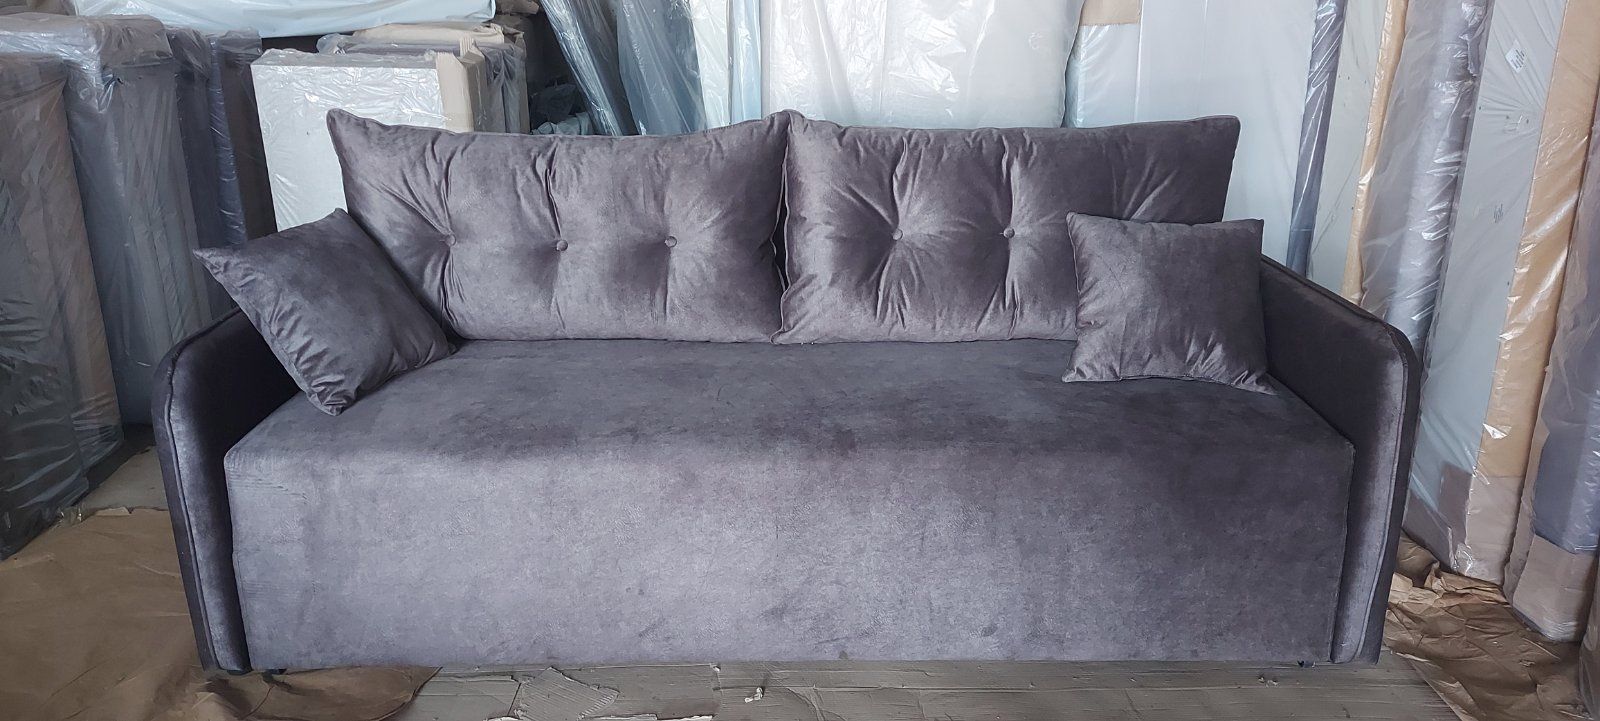 Малогабаритный диван в гостинную.